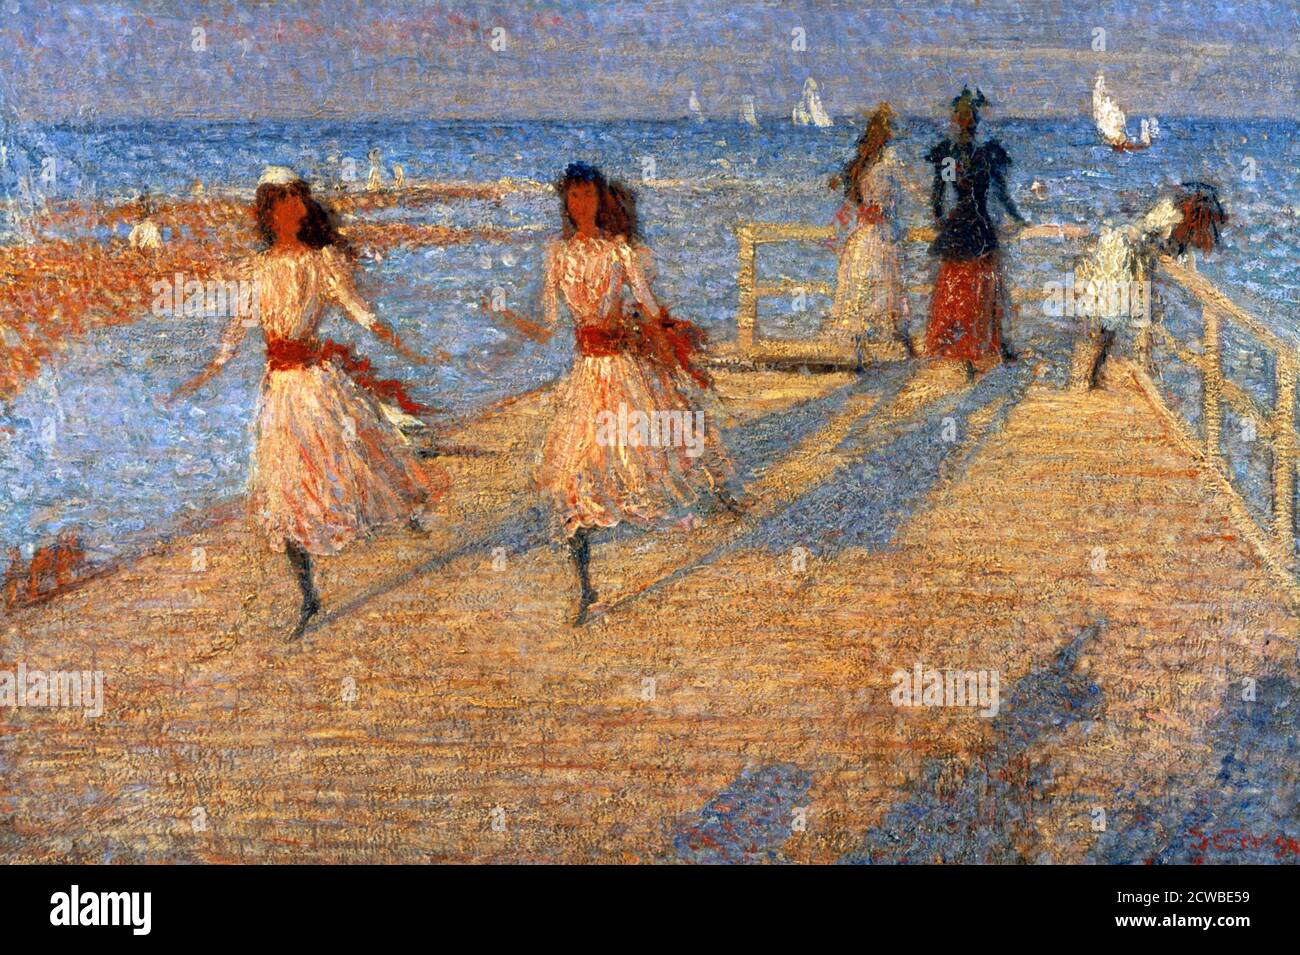 Girls Running, Walberswick Pier', 1888-1894 Künstler: Philip Wilson Steer, Steer besuchte Walberswick in Suffolk, wo er Freunde hatte. Er vollendete eine Reihe von Gemälden des Strandes. Stockfoto